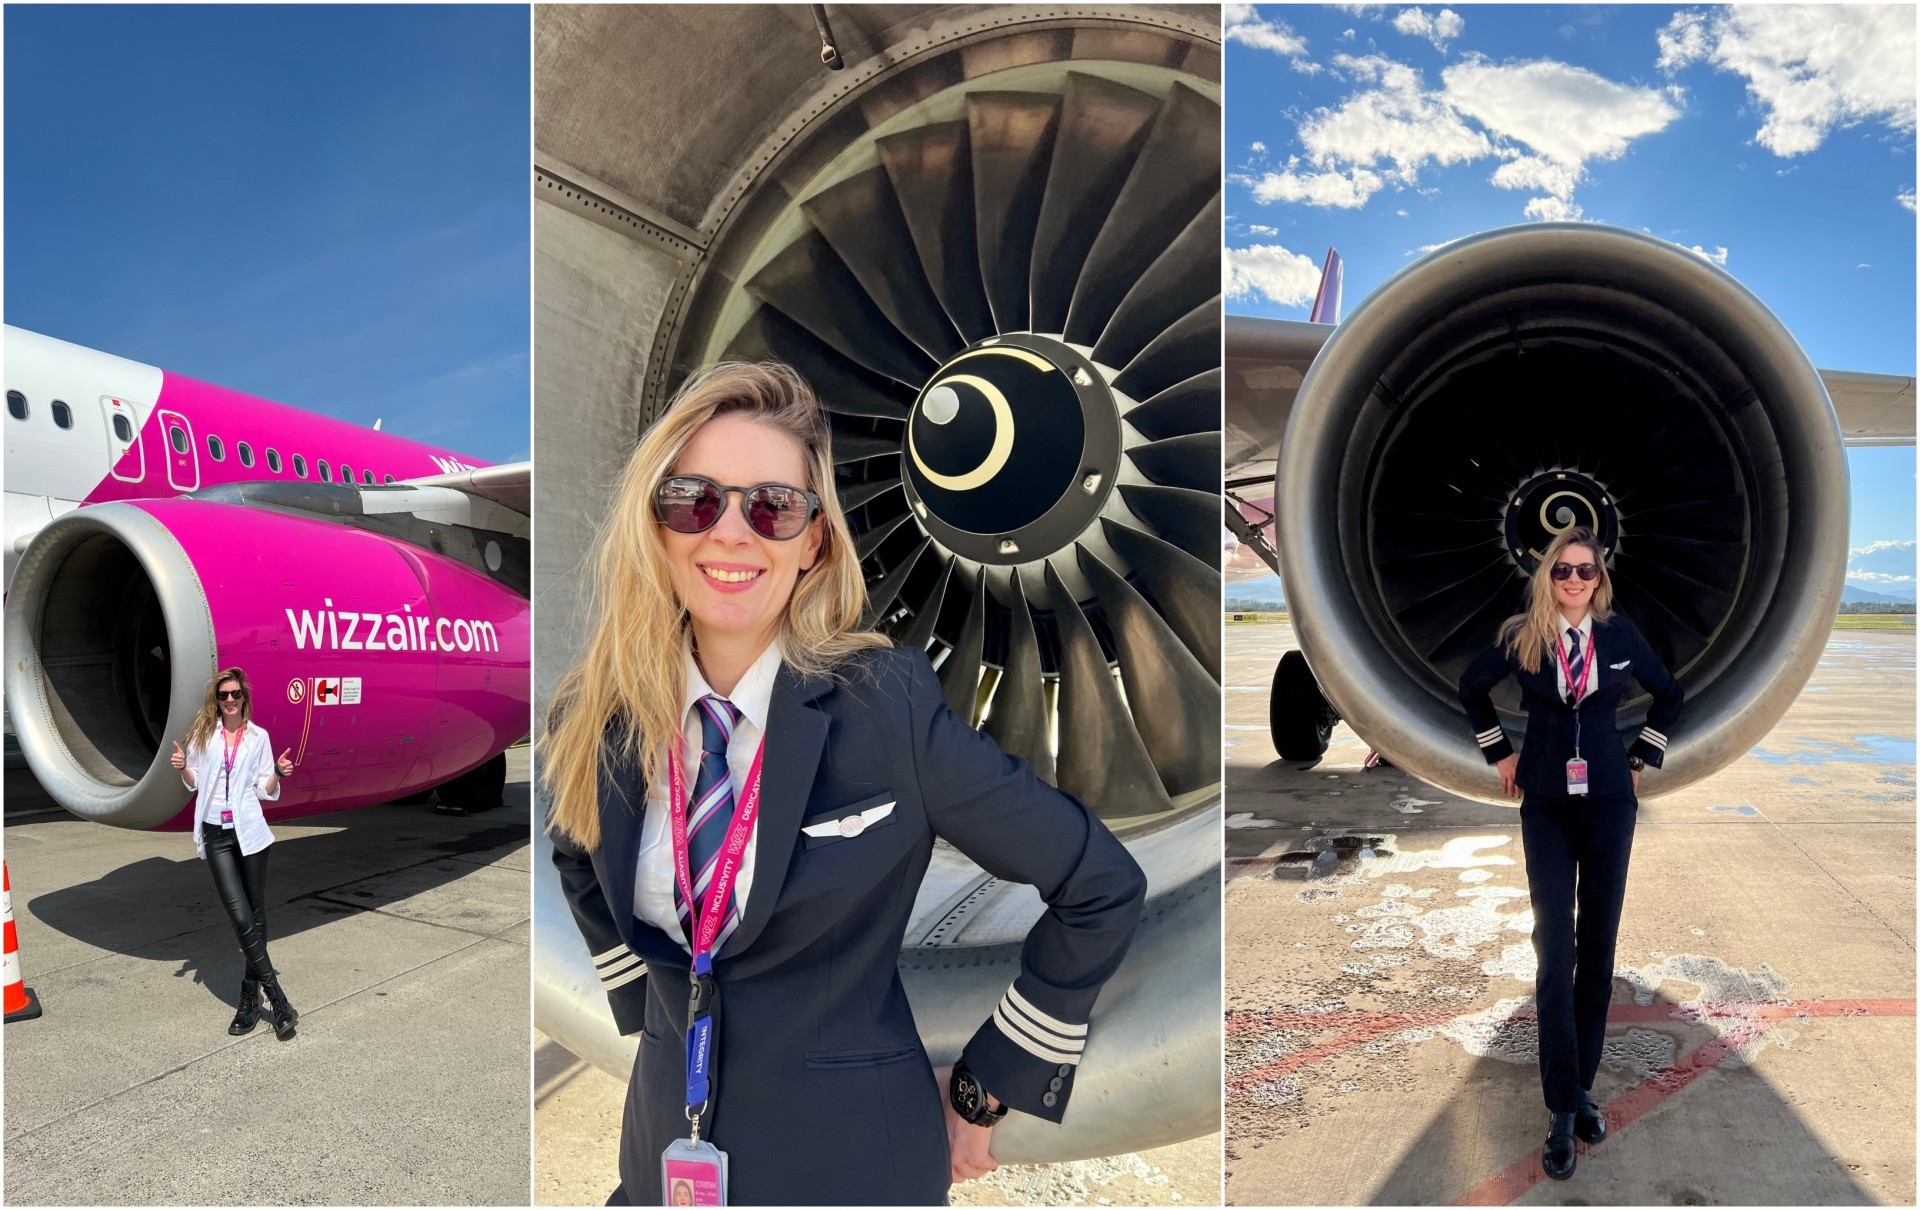 Македонската кралица на небото: Интервју со Ива Матиќ - од прва жена воен пилот, до пилотирање со комерцијален авион на Wizz Air